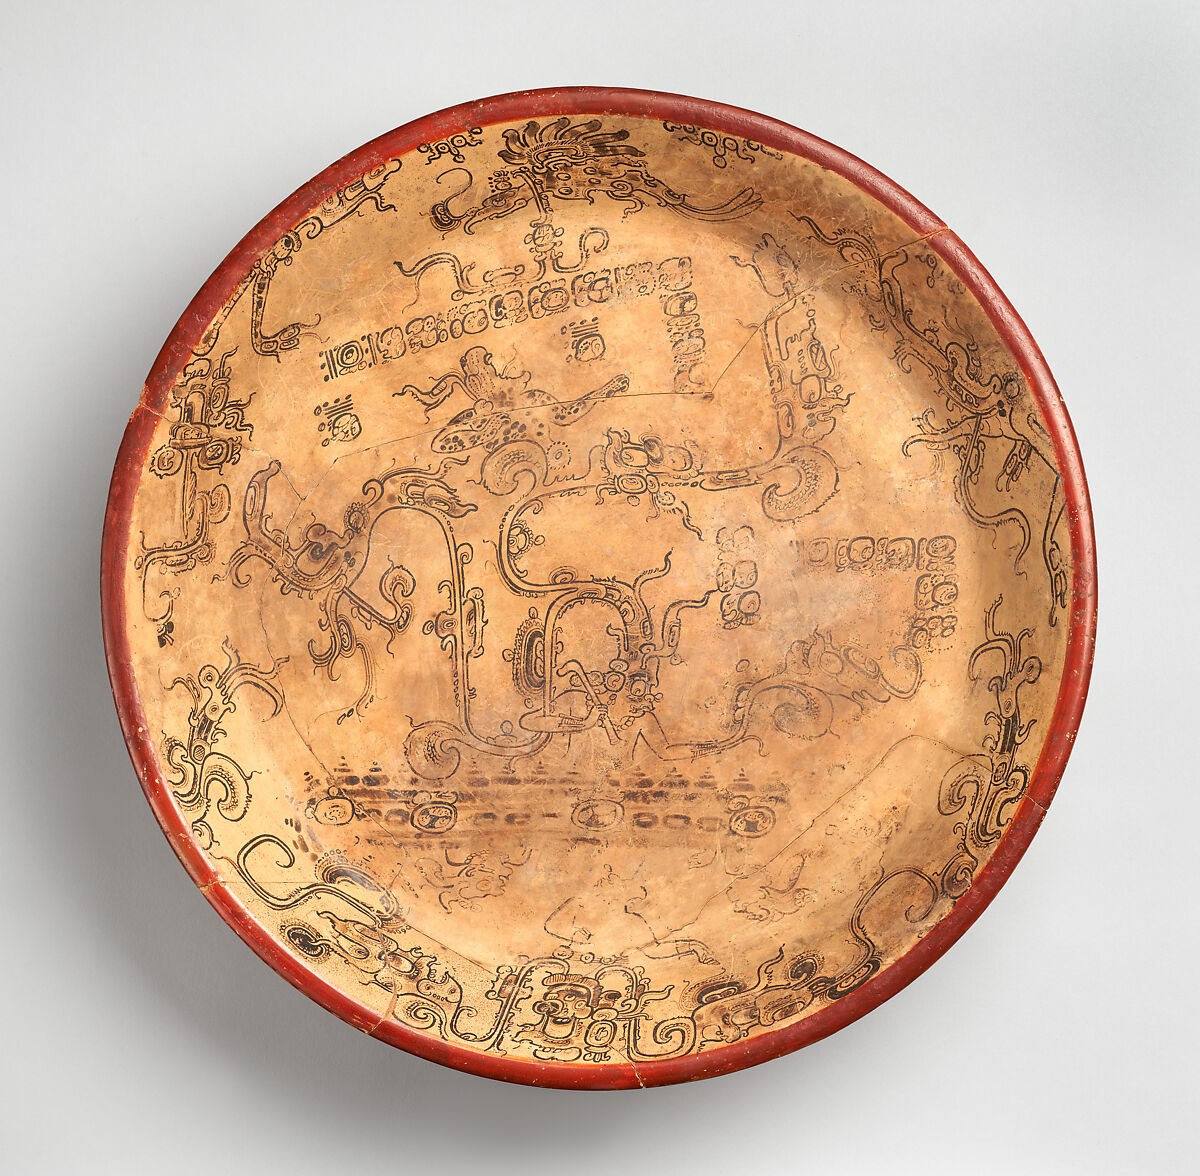 【神話の場面を描いた三脚皿　Tripod plate with mythological scene】メキシコ‐マヤ文化